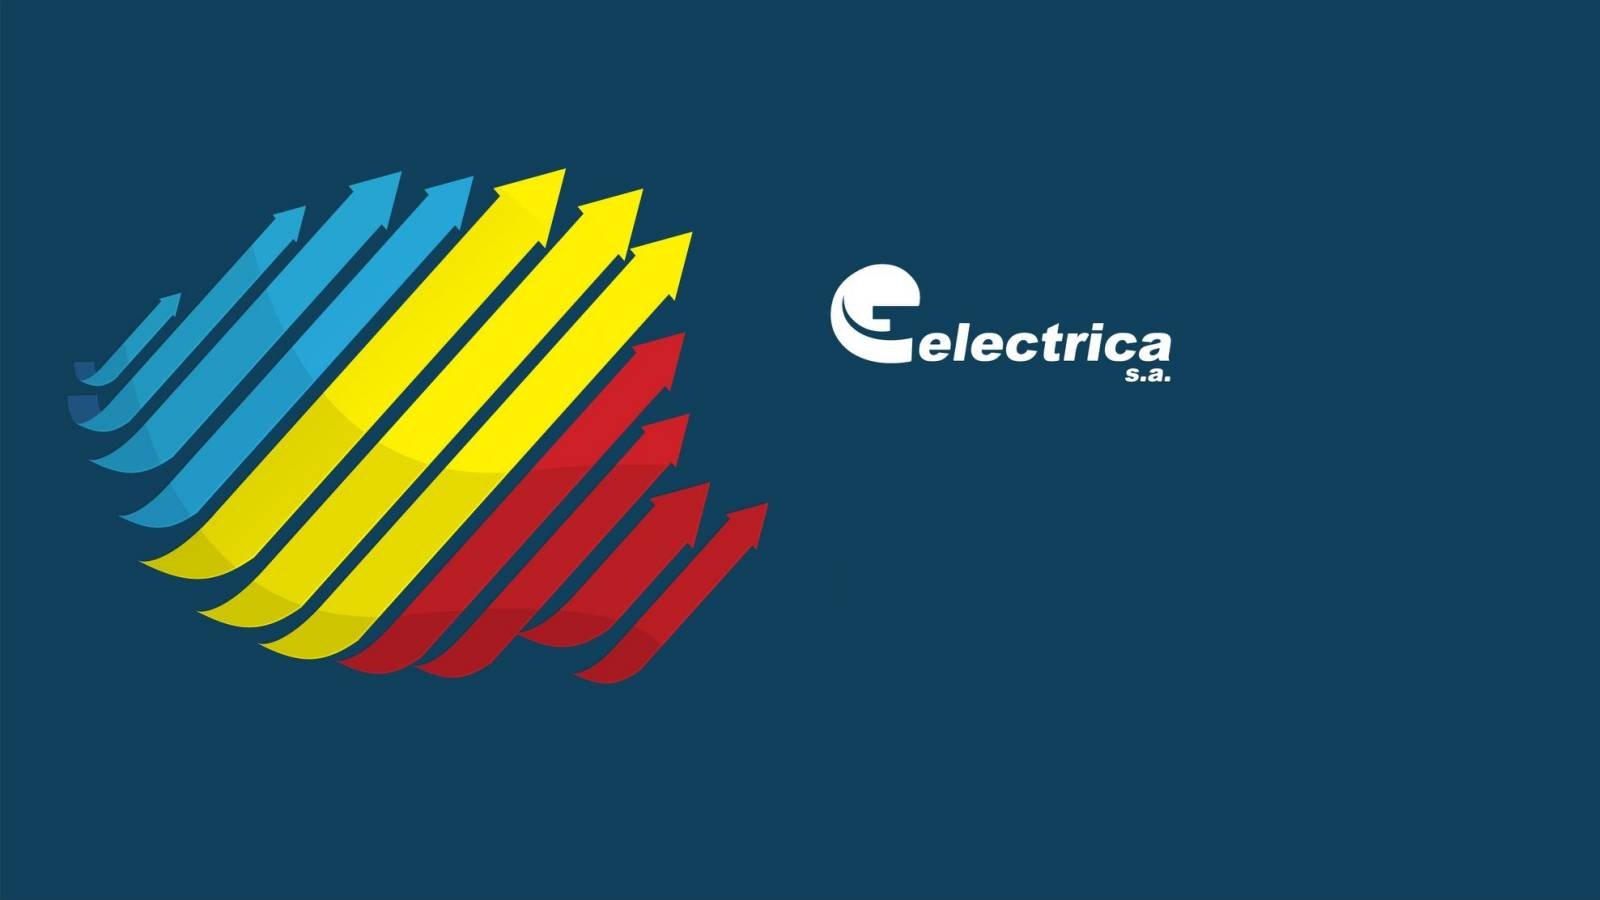 Electrica Anunt Formal ULTIM MOMENT sunt Instiintati Clientii Romani